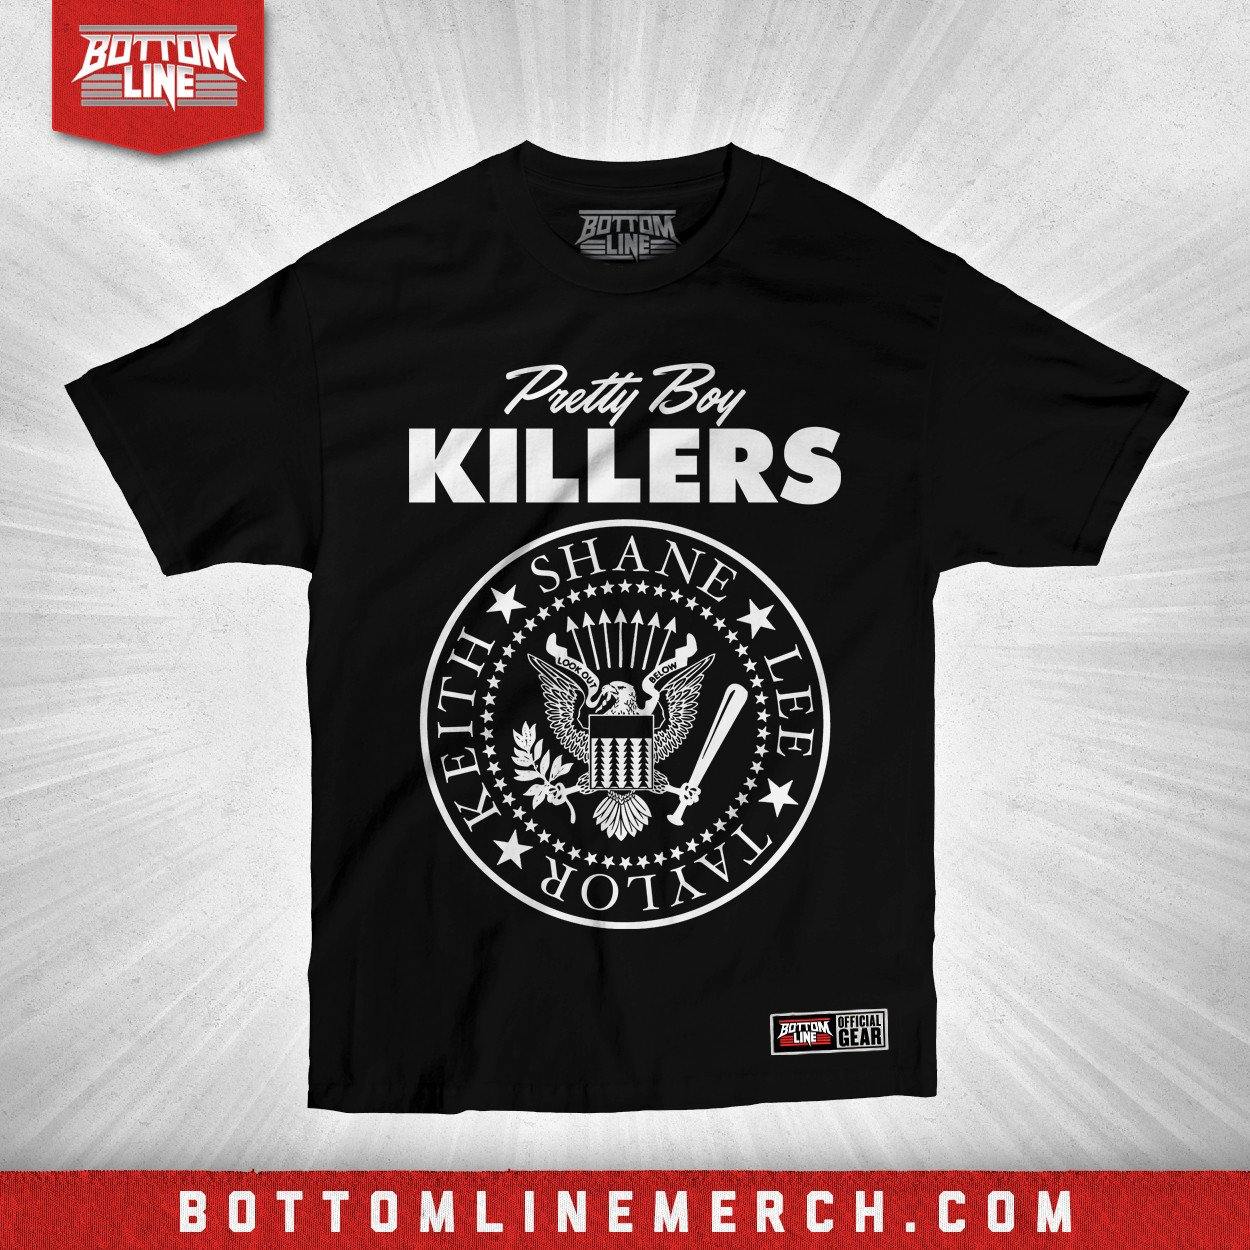 Buy Now – Shane Taylor "PBK Seal" Shirt – Wrestler & Wrestling Merch – Bottom Line